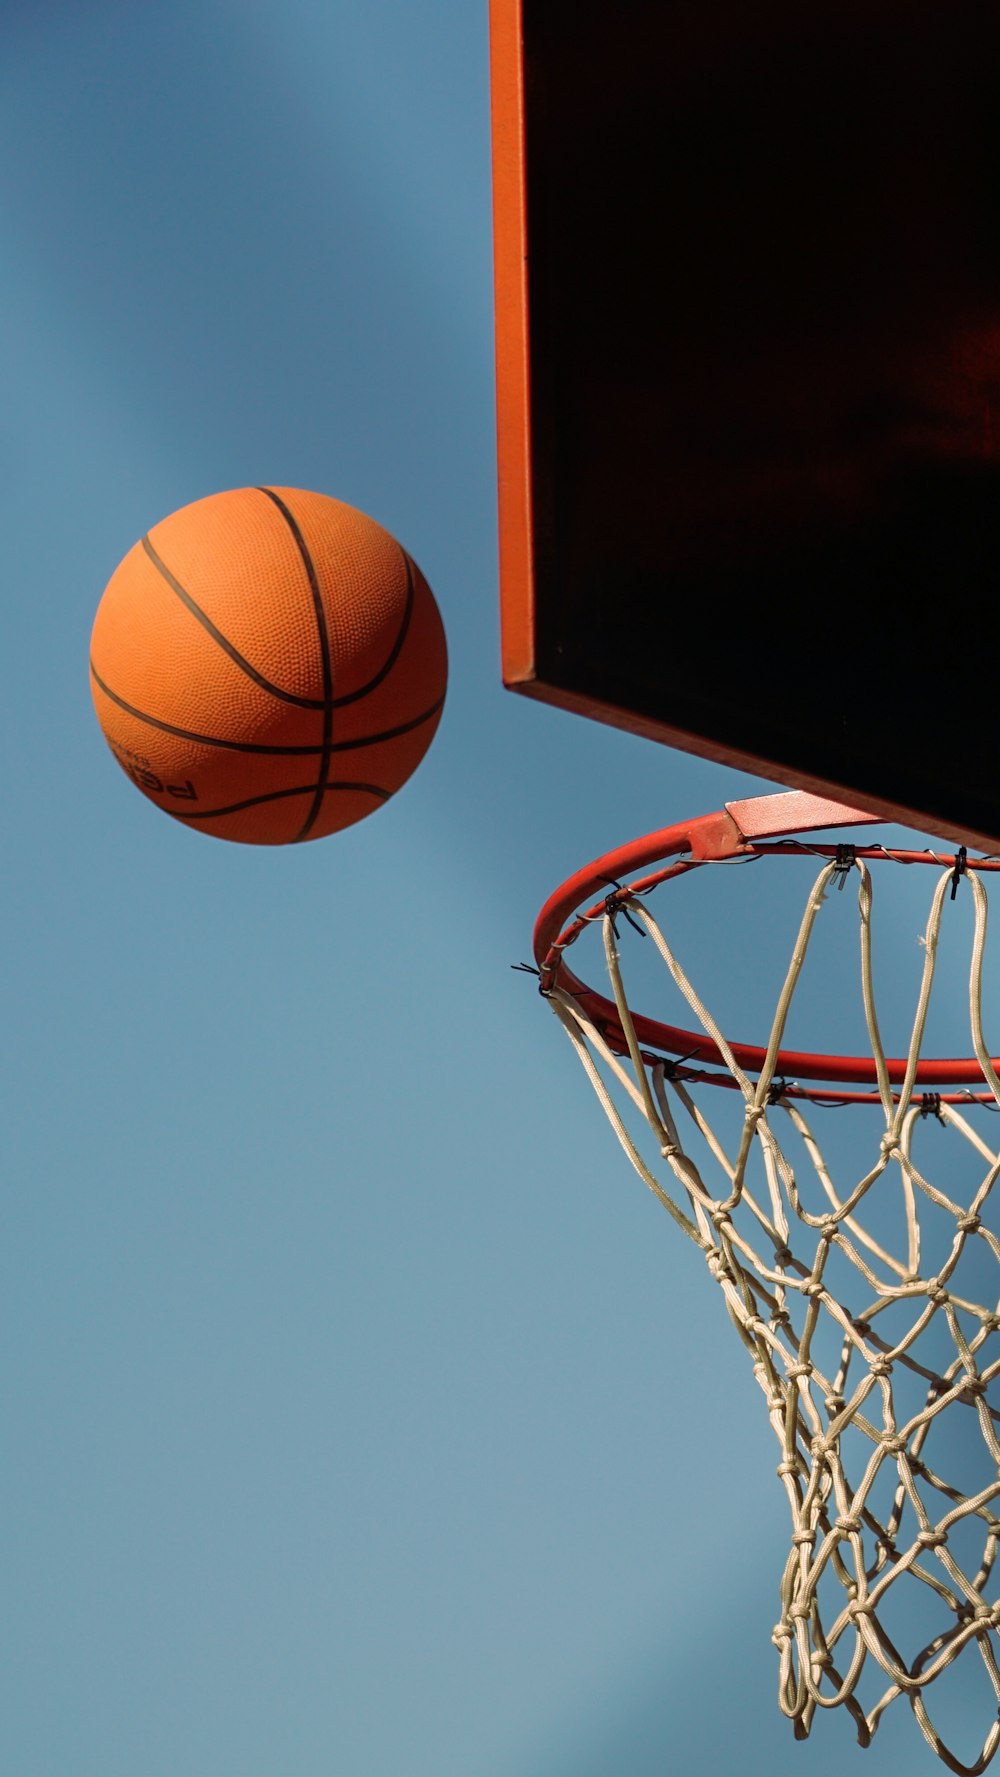 Un aro de baloncesto con una pelota en el aire